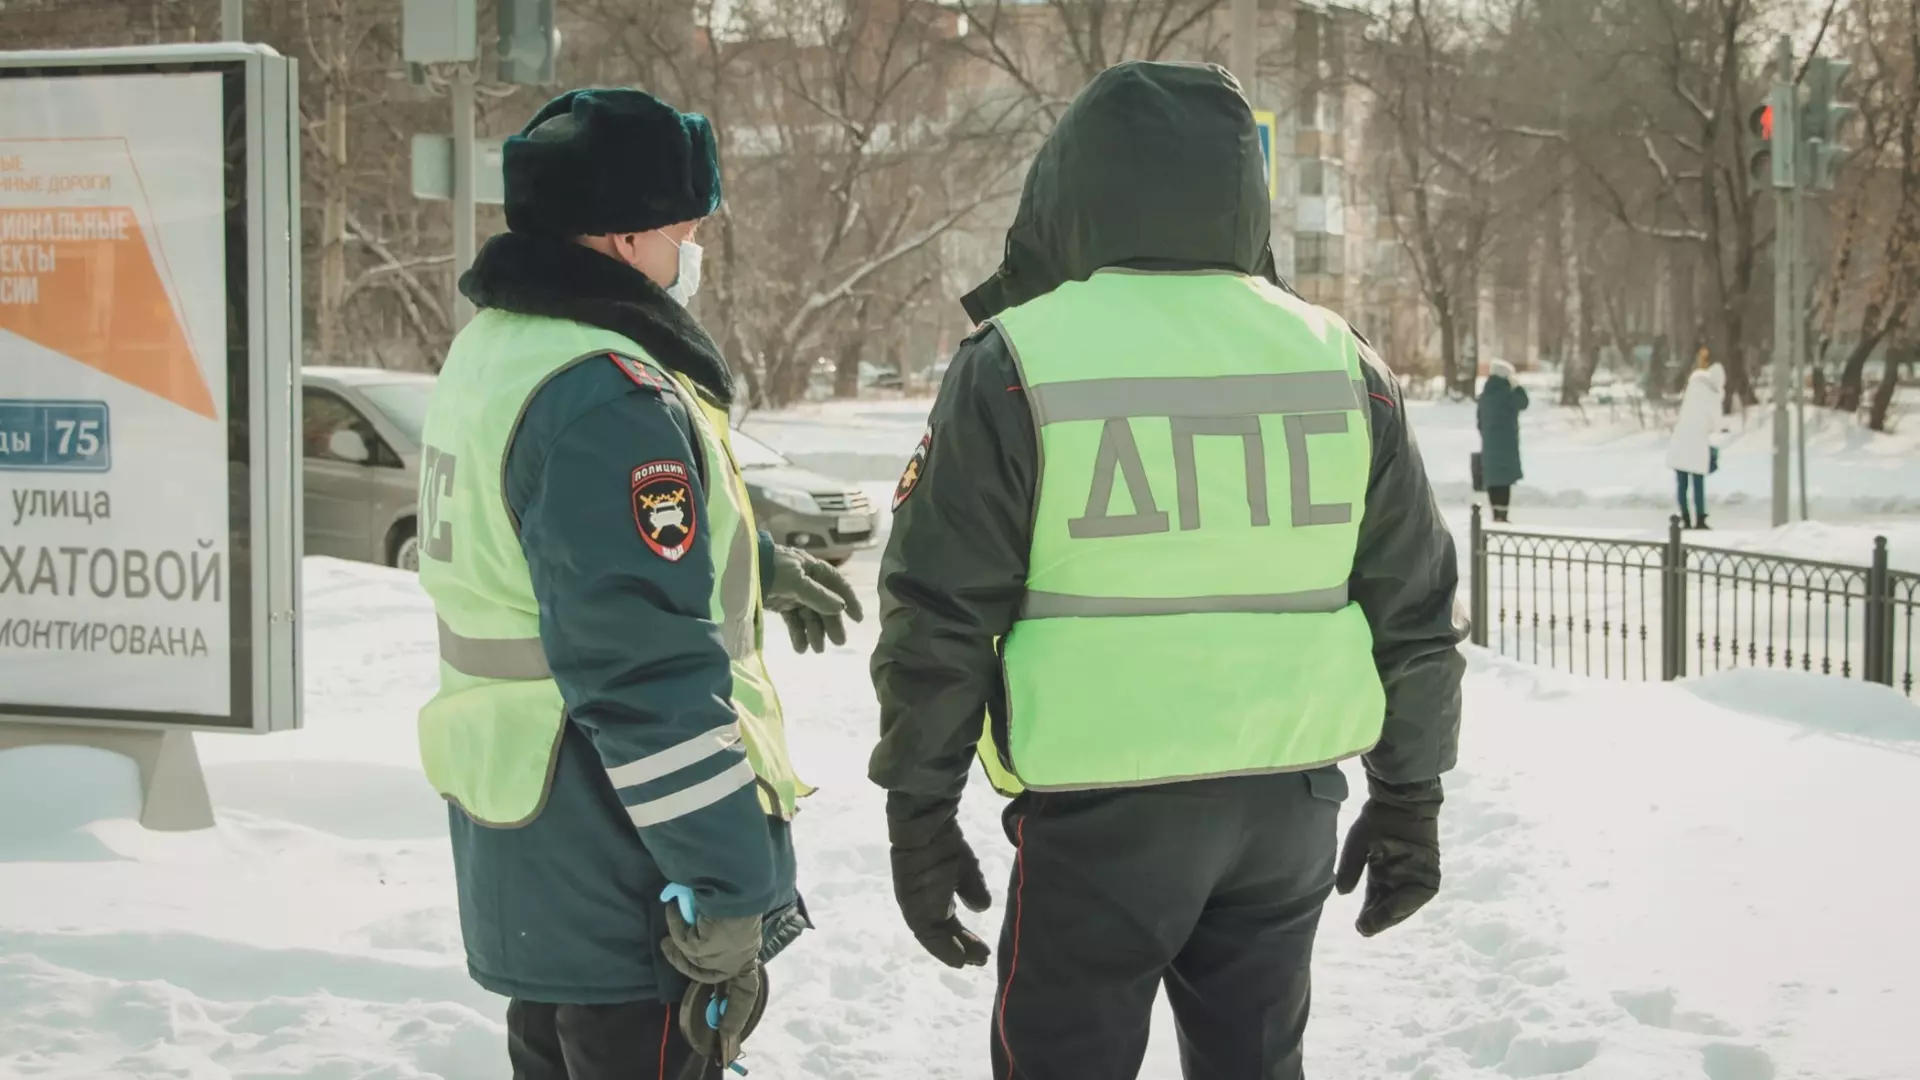 ГИБДД организует рейды по поиску пьяных водителей в Перми